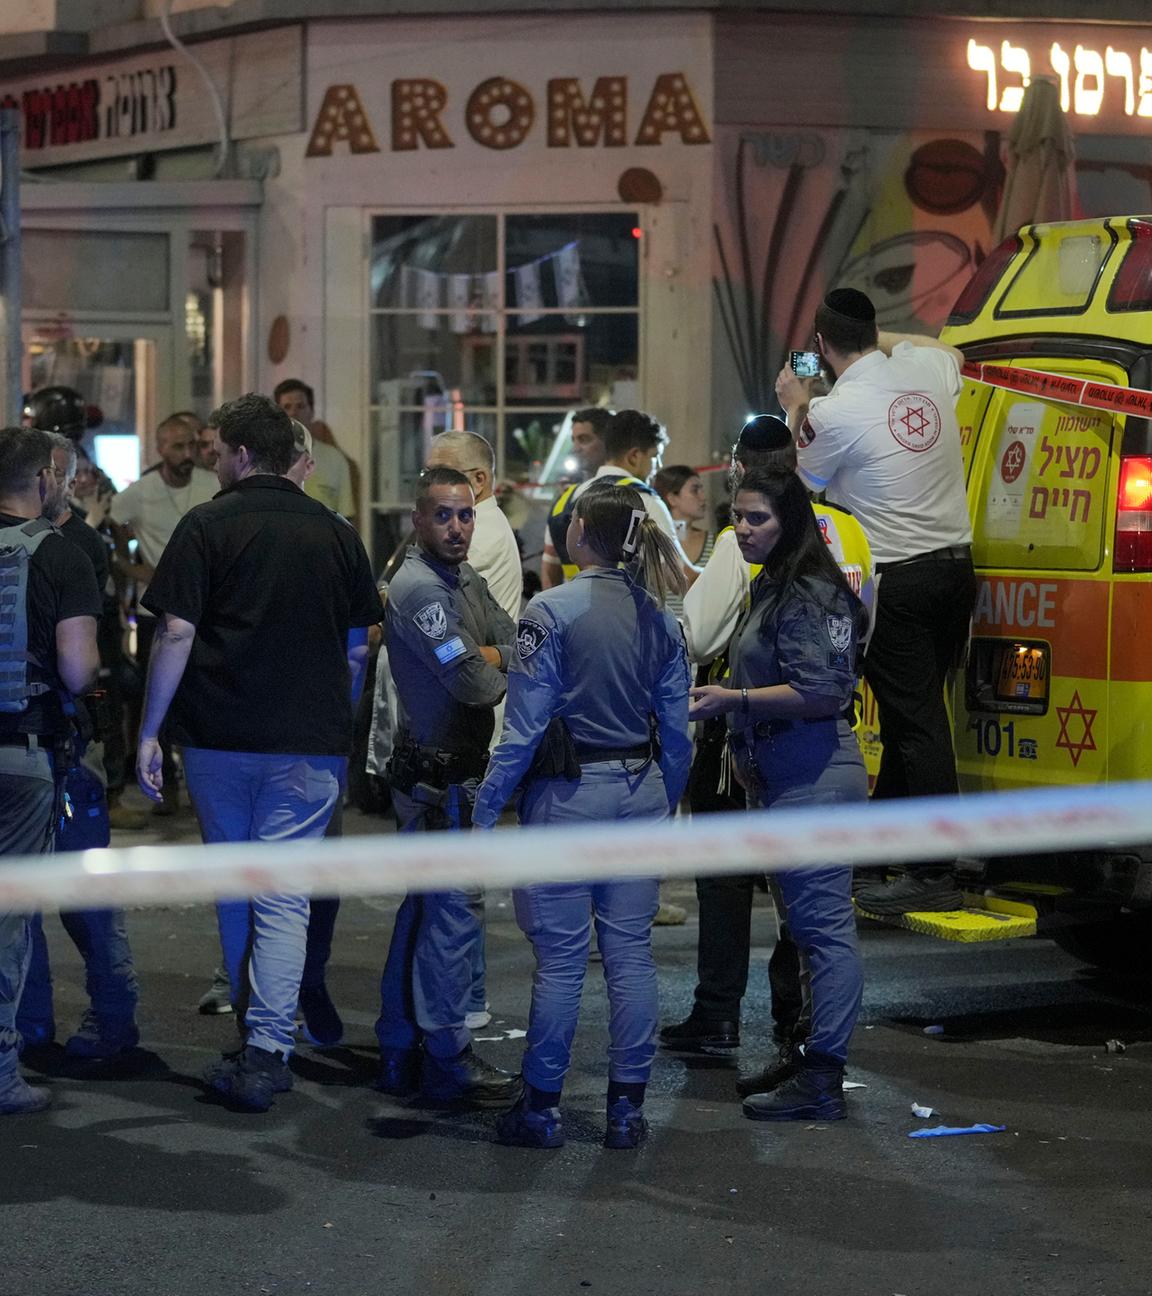  Israelische Polizisten und Rettungskräfte versammeln sich am Tatort einer tödlichen Explosion am frühen Freitag in Tel Aviv